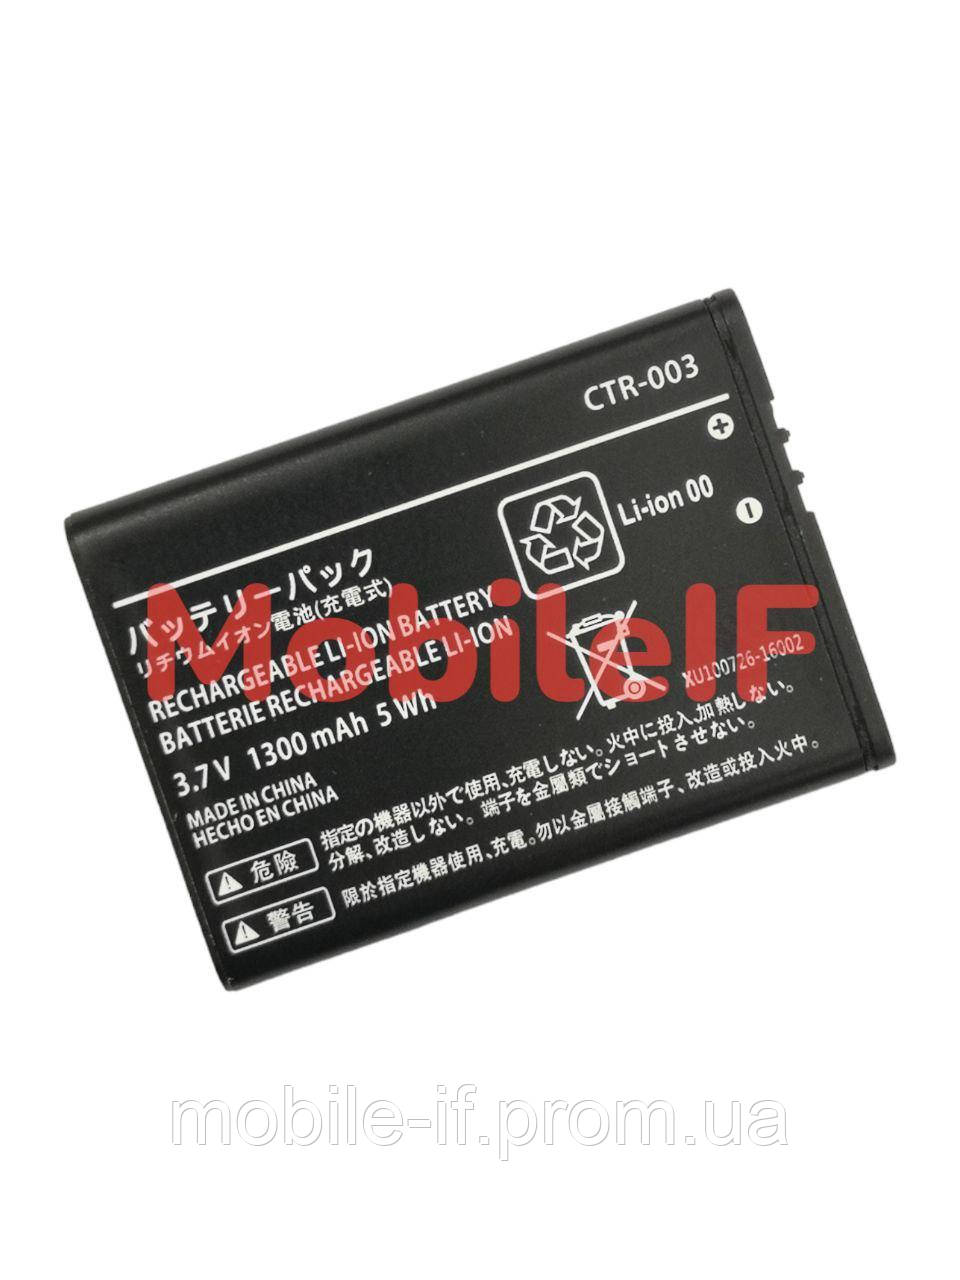 Акумулятор Батарея Nintendo 3DS, CTR-003, 1300mAh